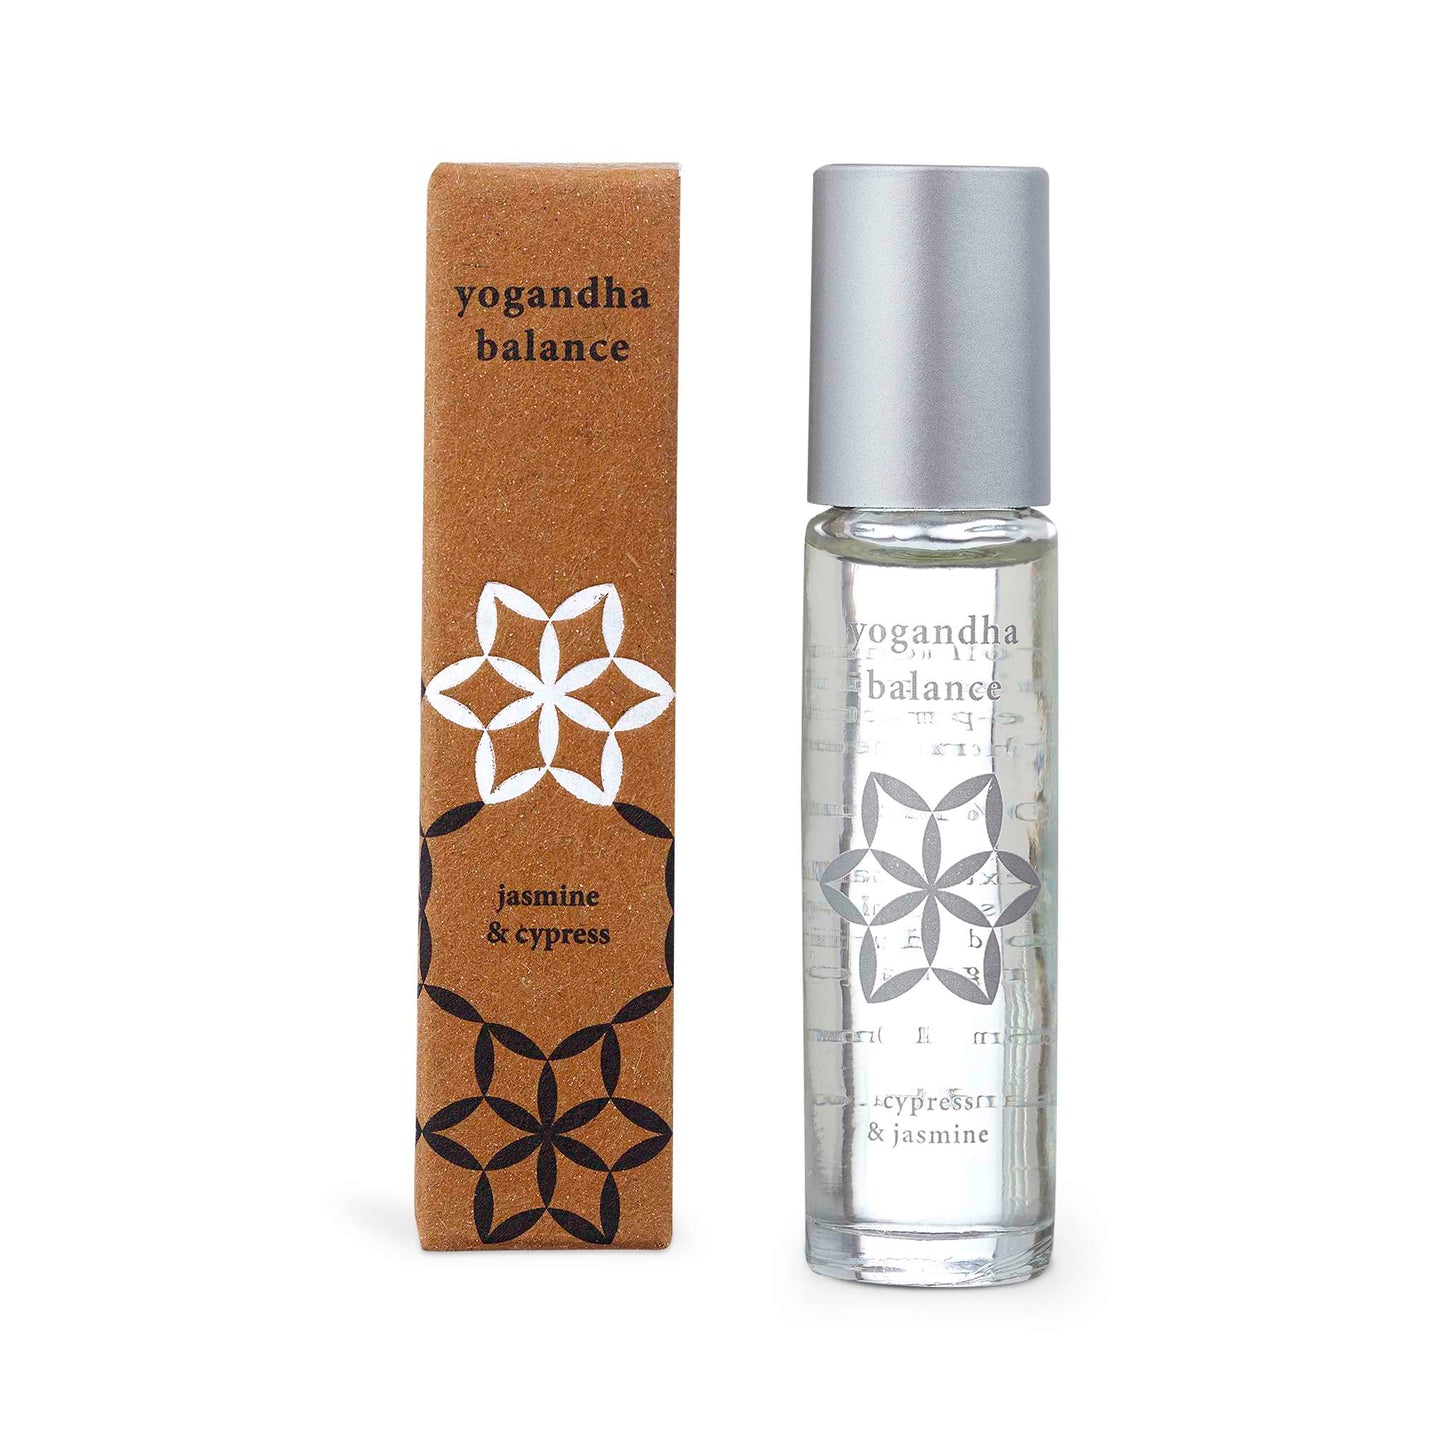 Yogandha Fragrance Oil Balance - Essential Oil Roll On with Jasmine & Cypress - Yoganda